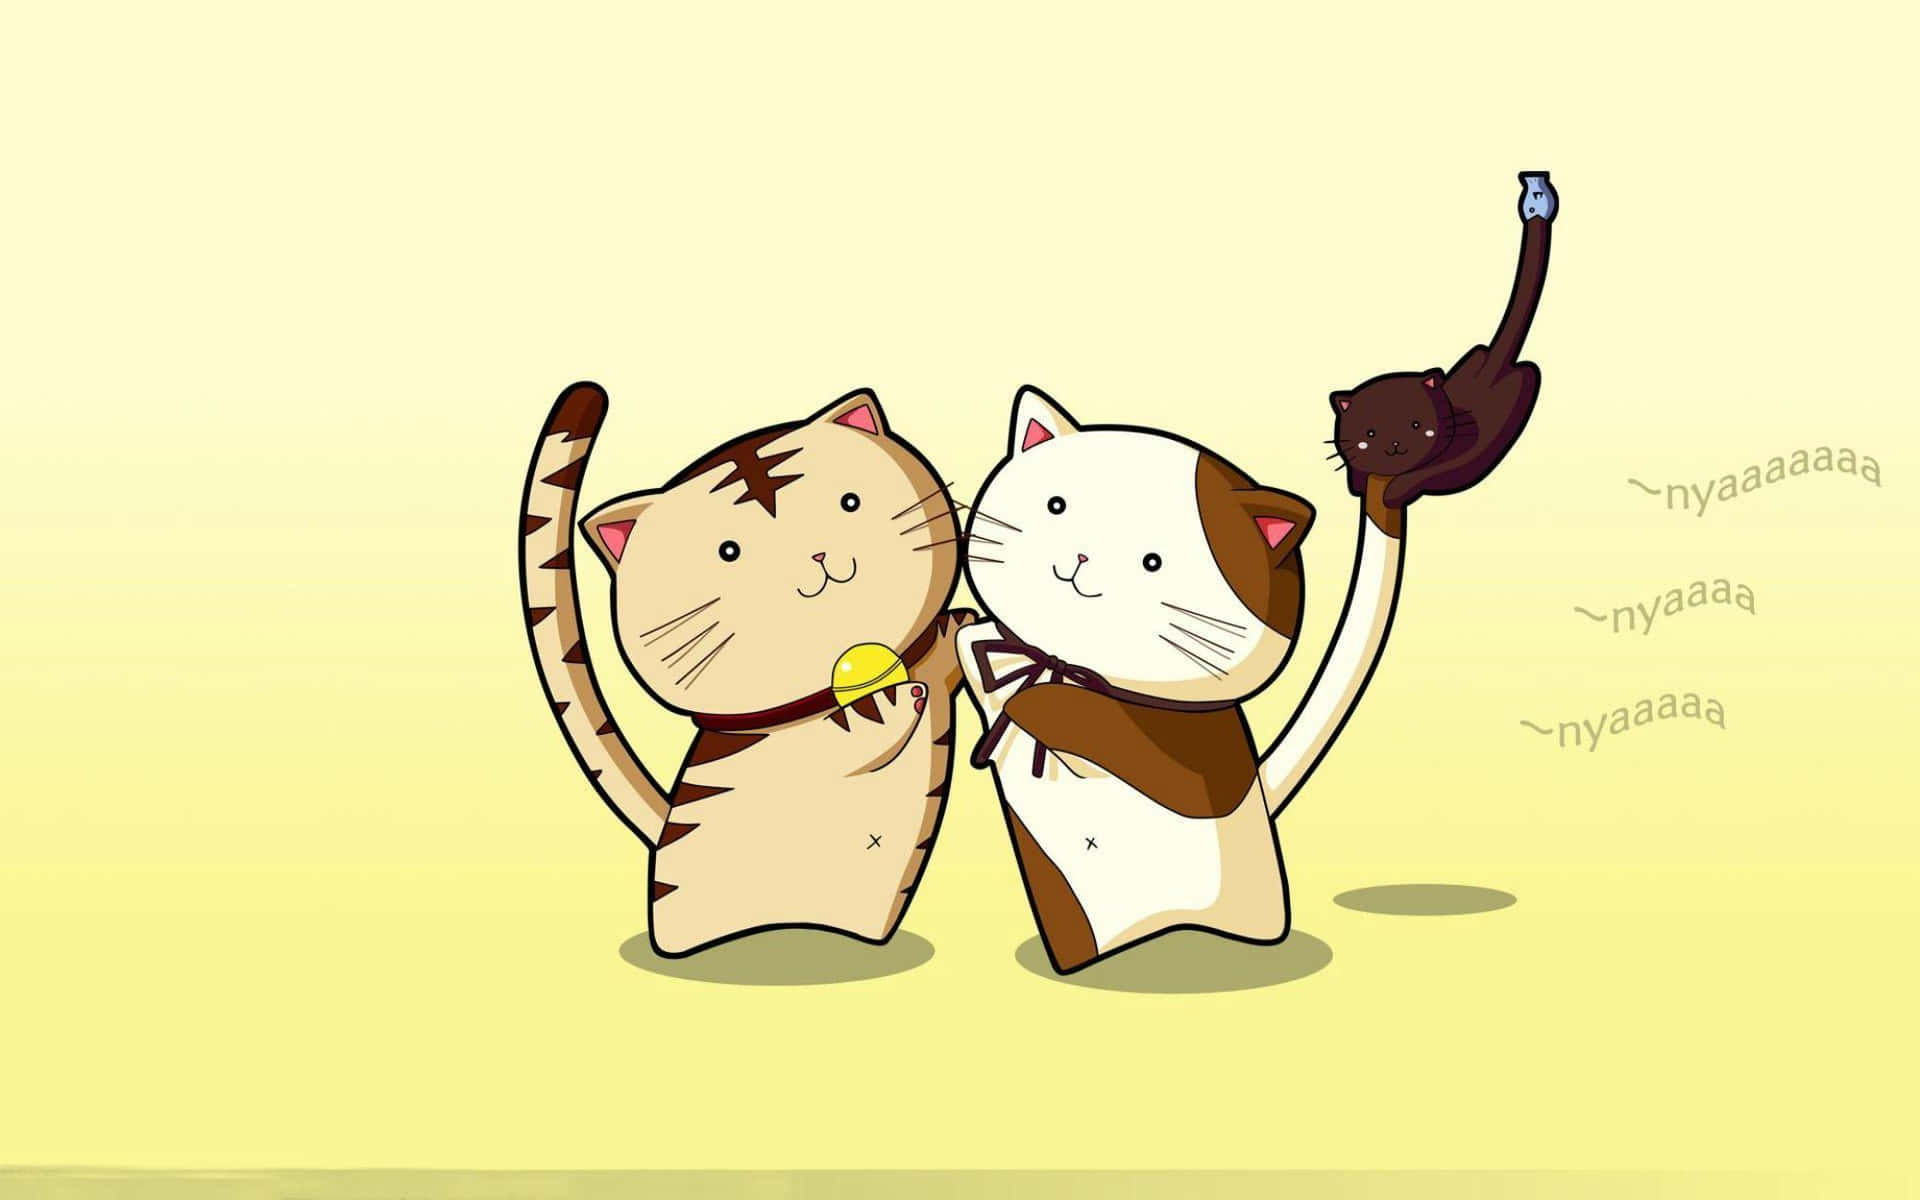 Kawaii Anime Cat Wallpaper: Những hình ảnh về mèo hoạt hình đáng yêu luôn là chủ đề được yêu thích trong giới trẻ. Hãy xem ngay các hình ảnh Kawaii Anime Cat Wallpaper để tìm kiếm ý tưởng trang trí cho chiếc điện thoại hoặc máy tính của mình nhé!